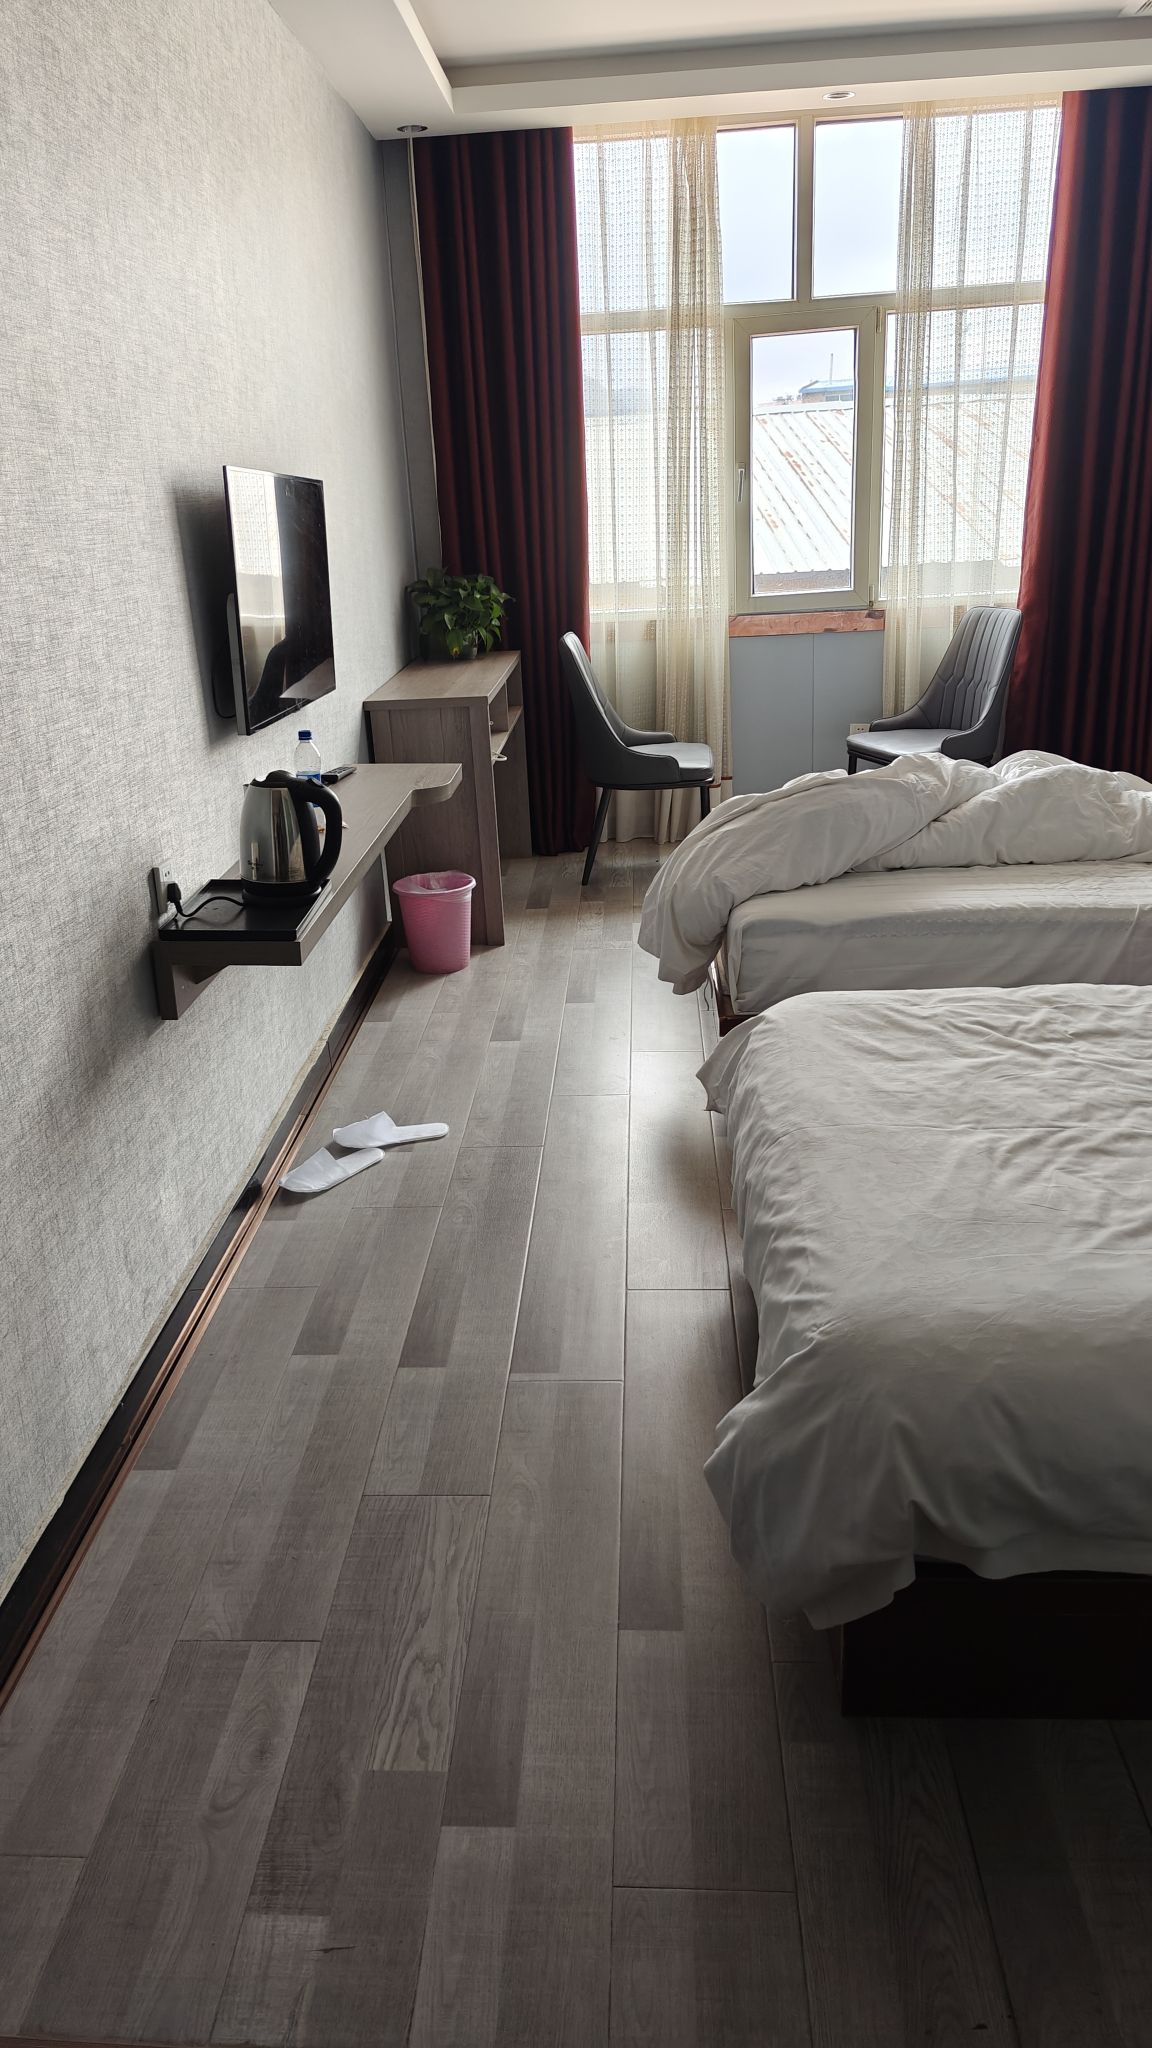 一个干净整洁、装饰风格独特且舒适的住宿环境往往能给客人留下深刻的印象。良好的隔音效果、舒适的床品、现